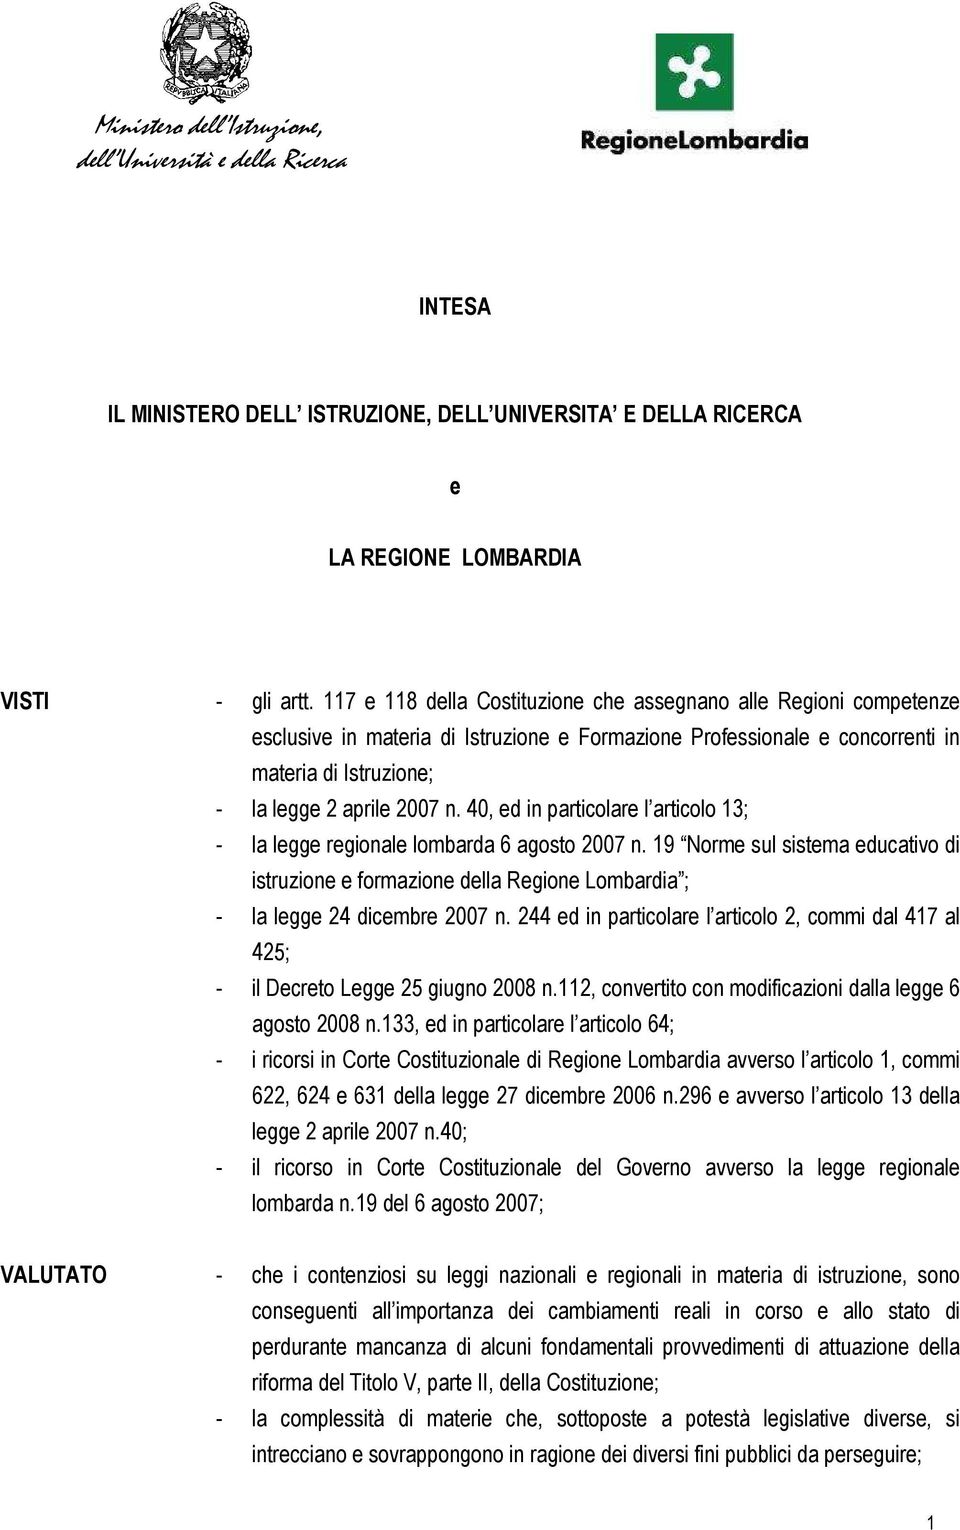 40, ed in particolare l articolo 13; - la legge regionale lombarda 6 agosto 2007 n. 19 Norme sul sistema educativo di istruzione e formazione della Regione Lombardia ; - la legge 24 dicembre 2007 n.